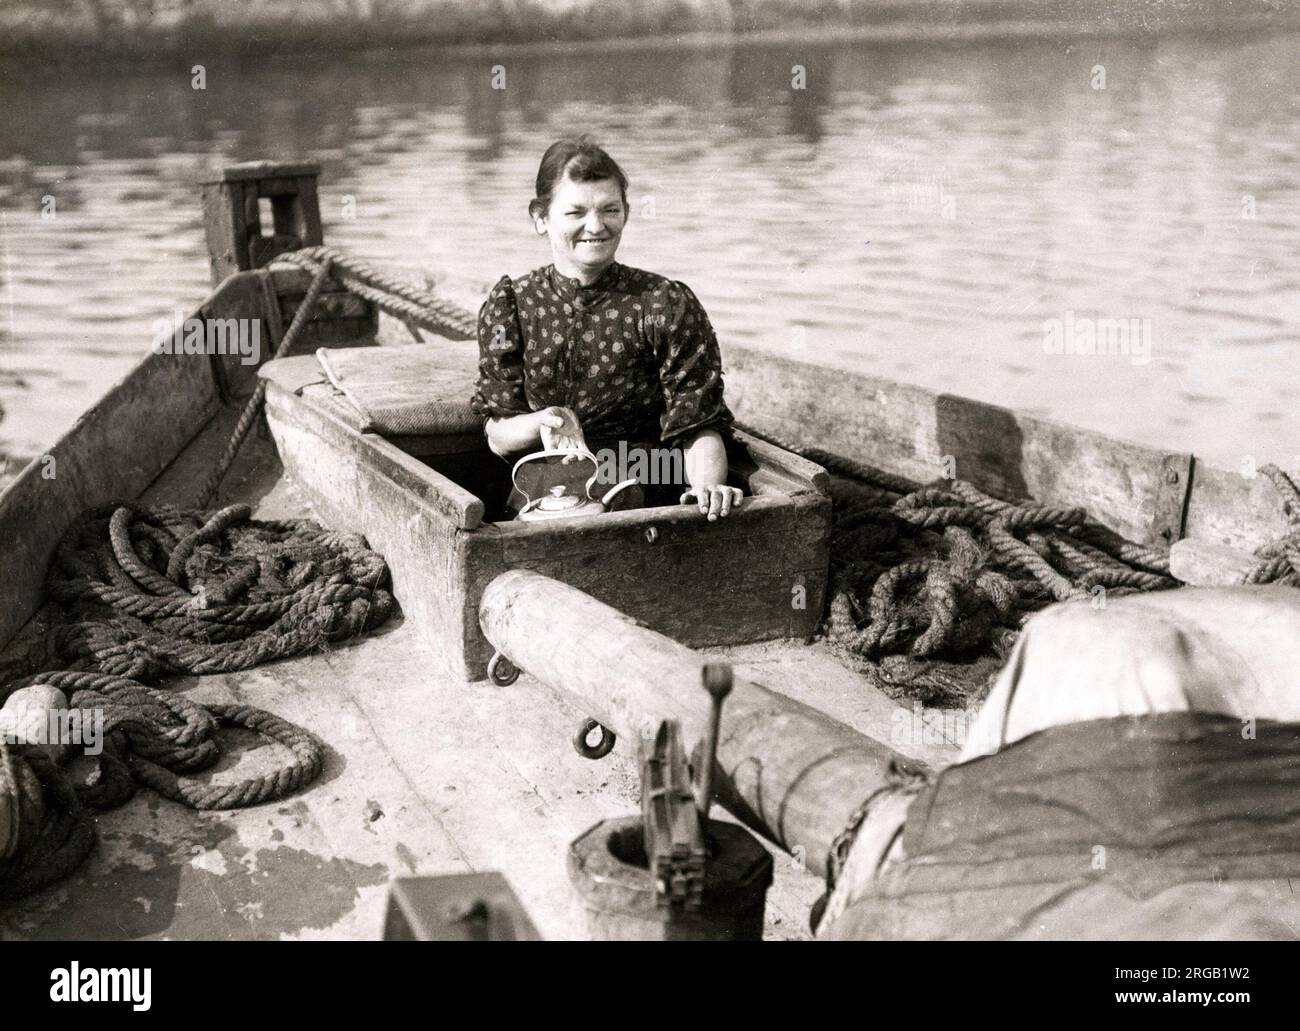 Photo de presse vintage du début du 20th siècle - vie de famille à bord d'un bateau, histoire sociale, pauvreté, Angleterre, 1920s - femme souriante bouillant une bouilloire Banque D'Images